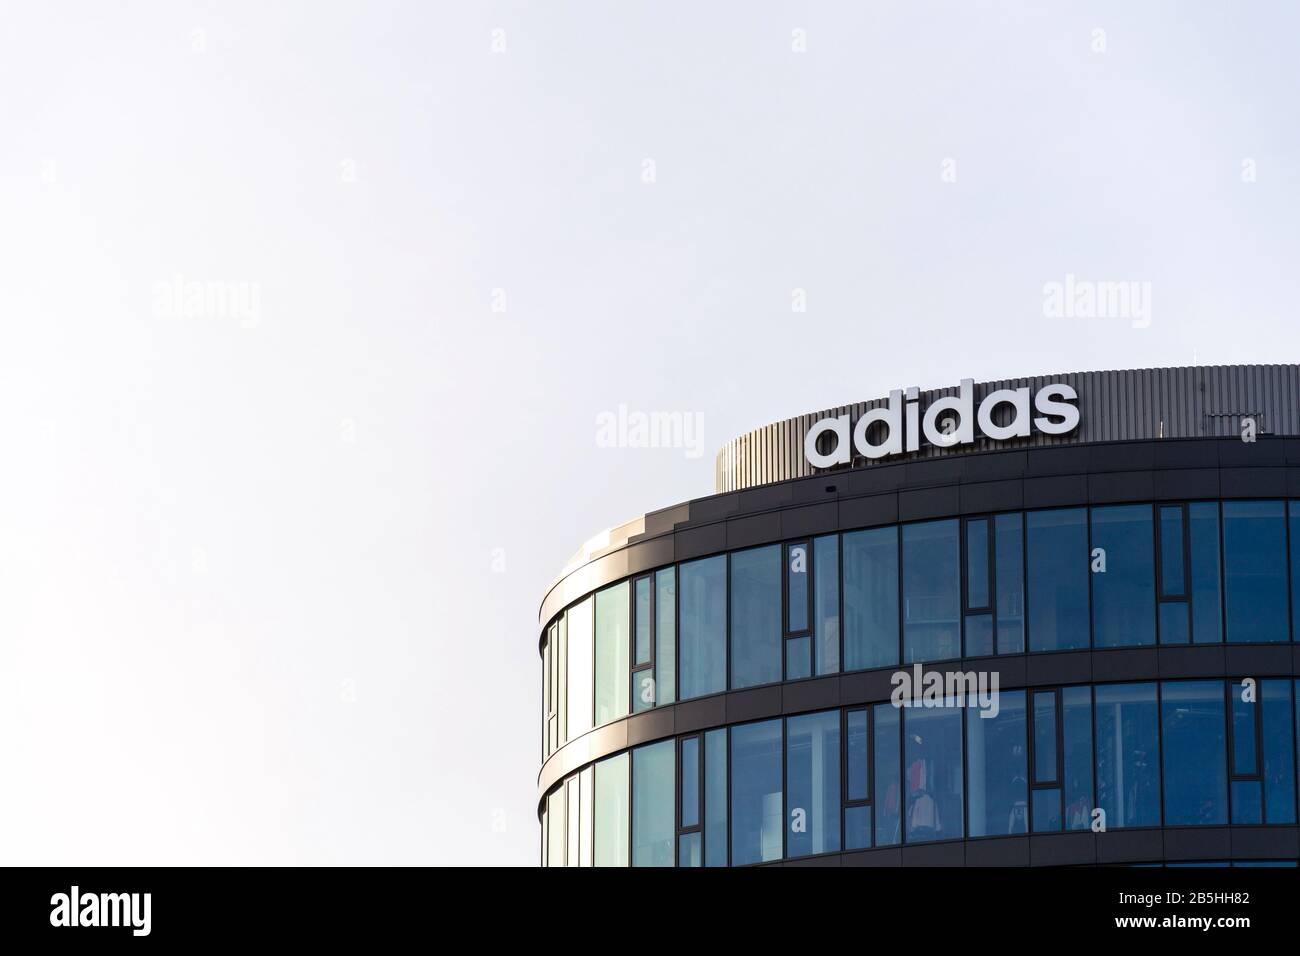 Prag, TSCHECHIEN - 5. MÄRZ 2020: Sportbekleidungshersteller Adidas Firmenlogo auf dem Hauptsitz am 5. März 2020 in Prag, Tschechien, aufgebaut Stockfoto